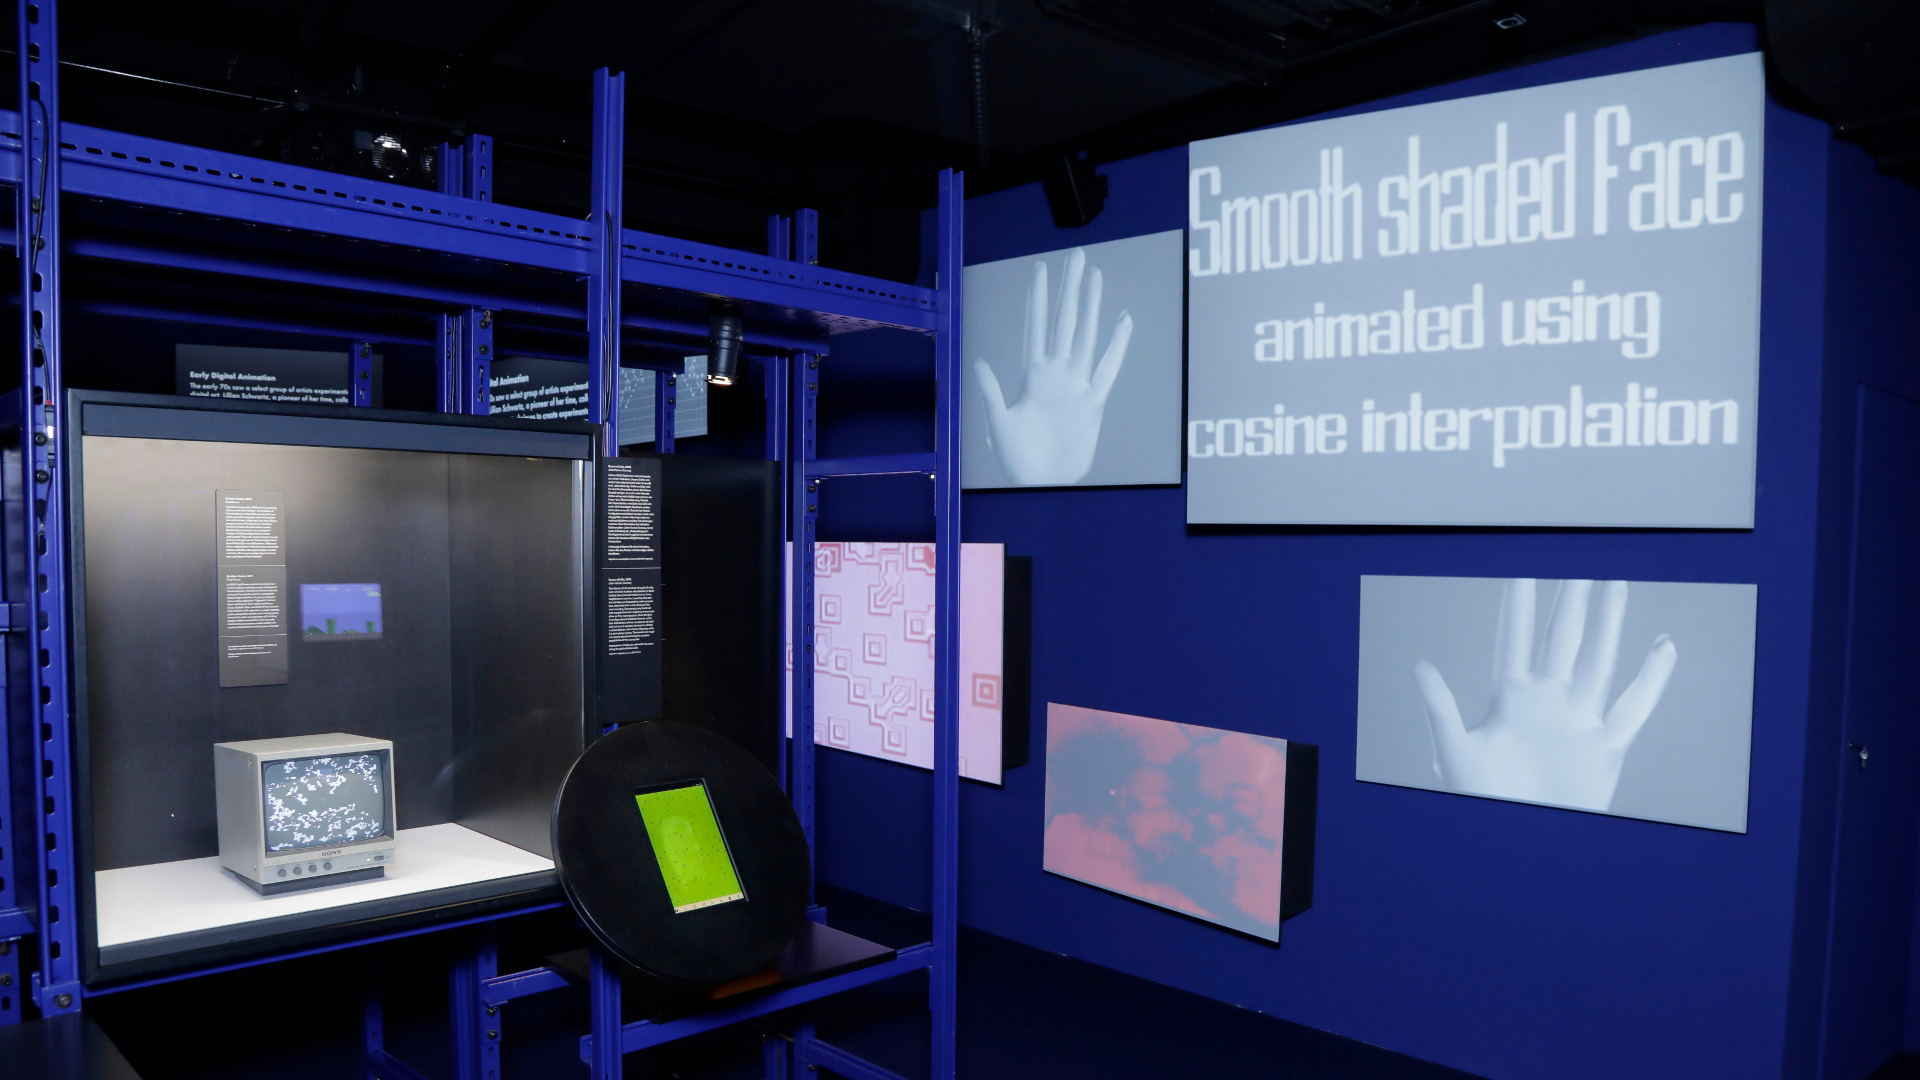 Ein Blick in die Ausstellung zeigt, in einer blauen Umgebung verschiedene Objekte an einer Wand und einer Vitrine.